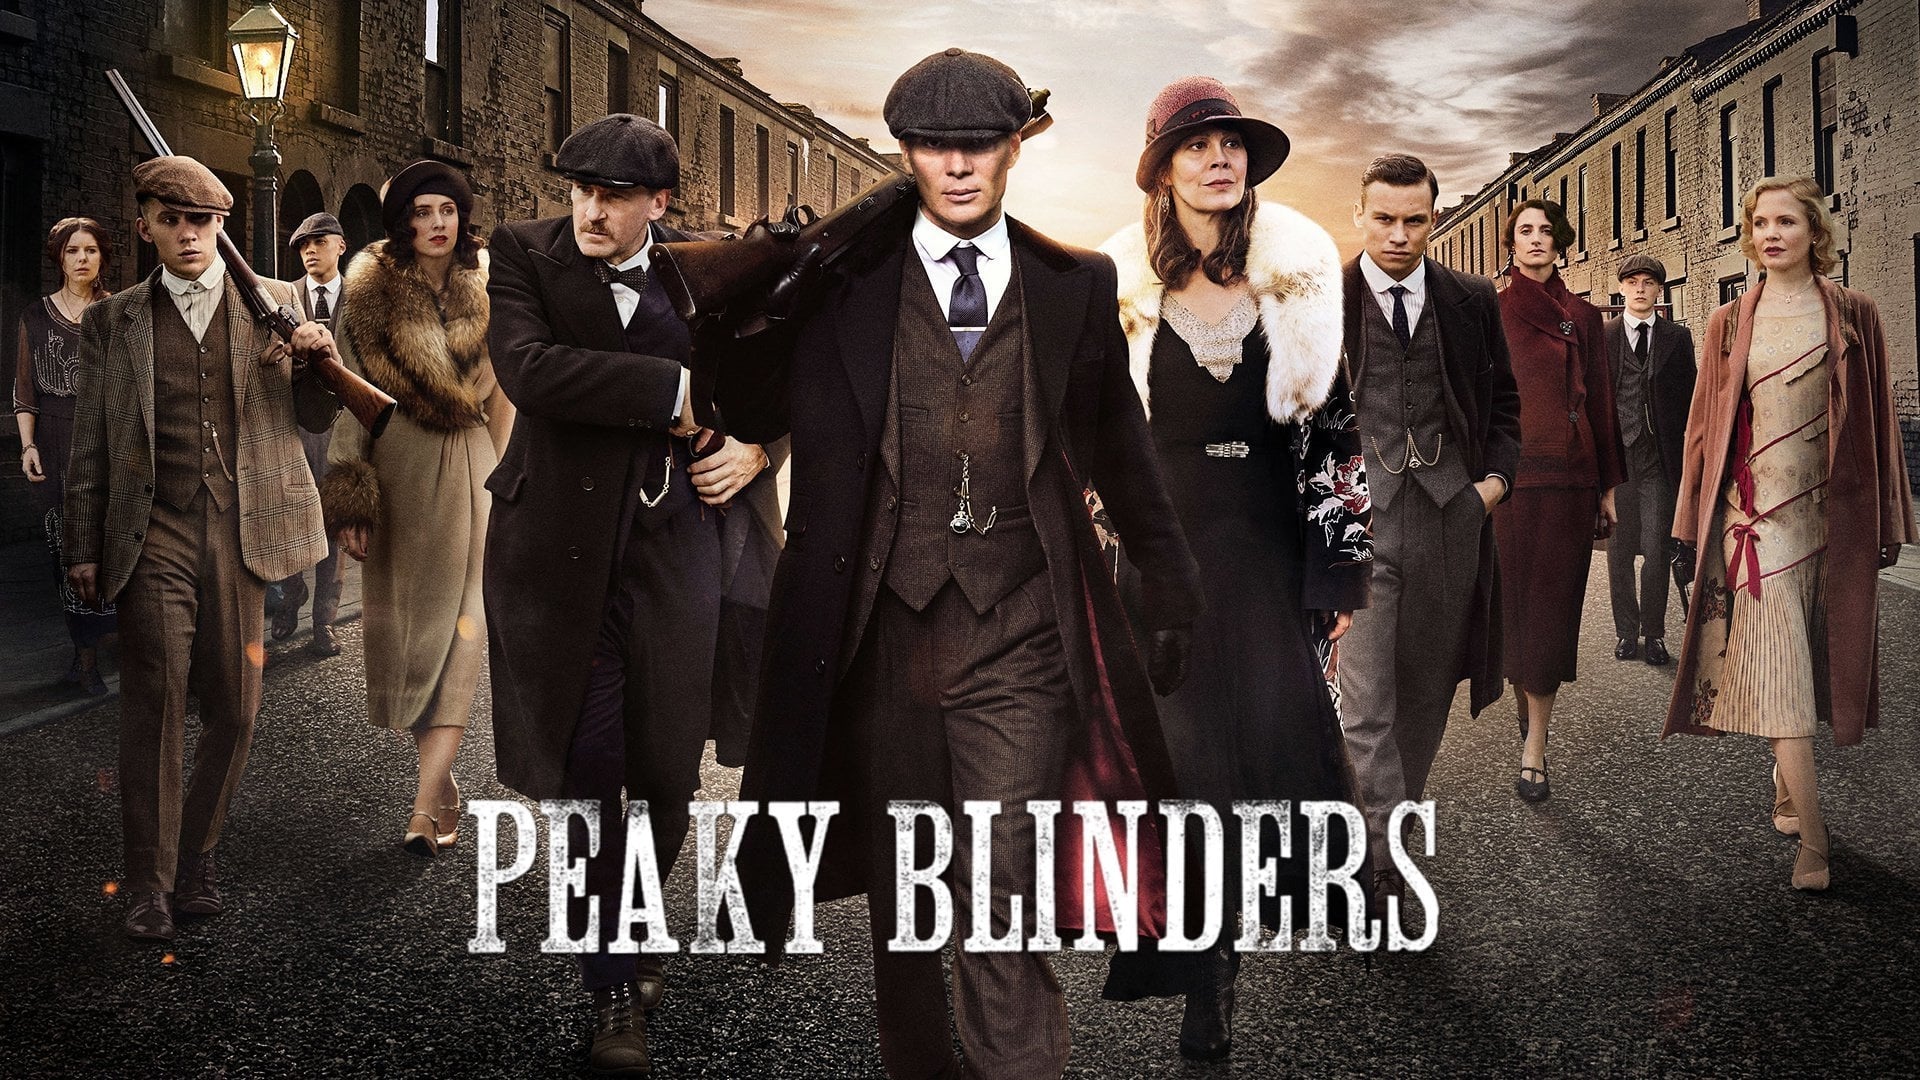 Peaky Blinders - Season 5 Episode 2